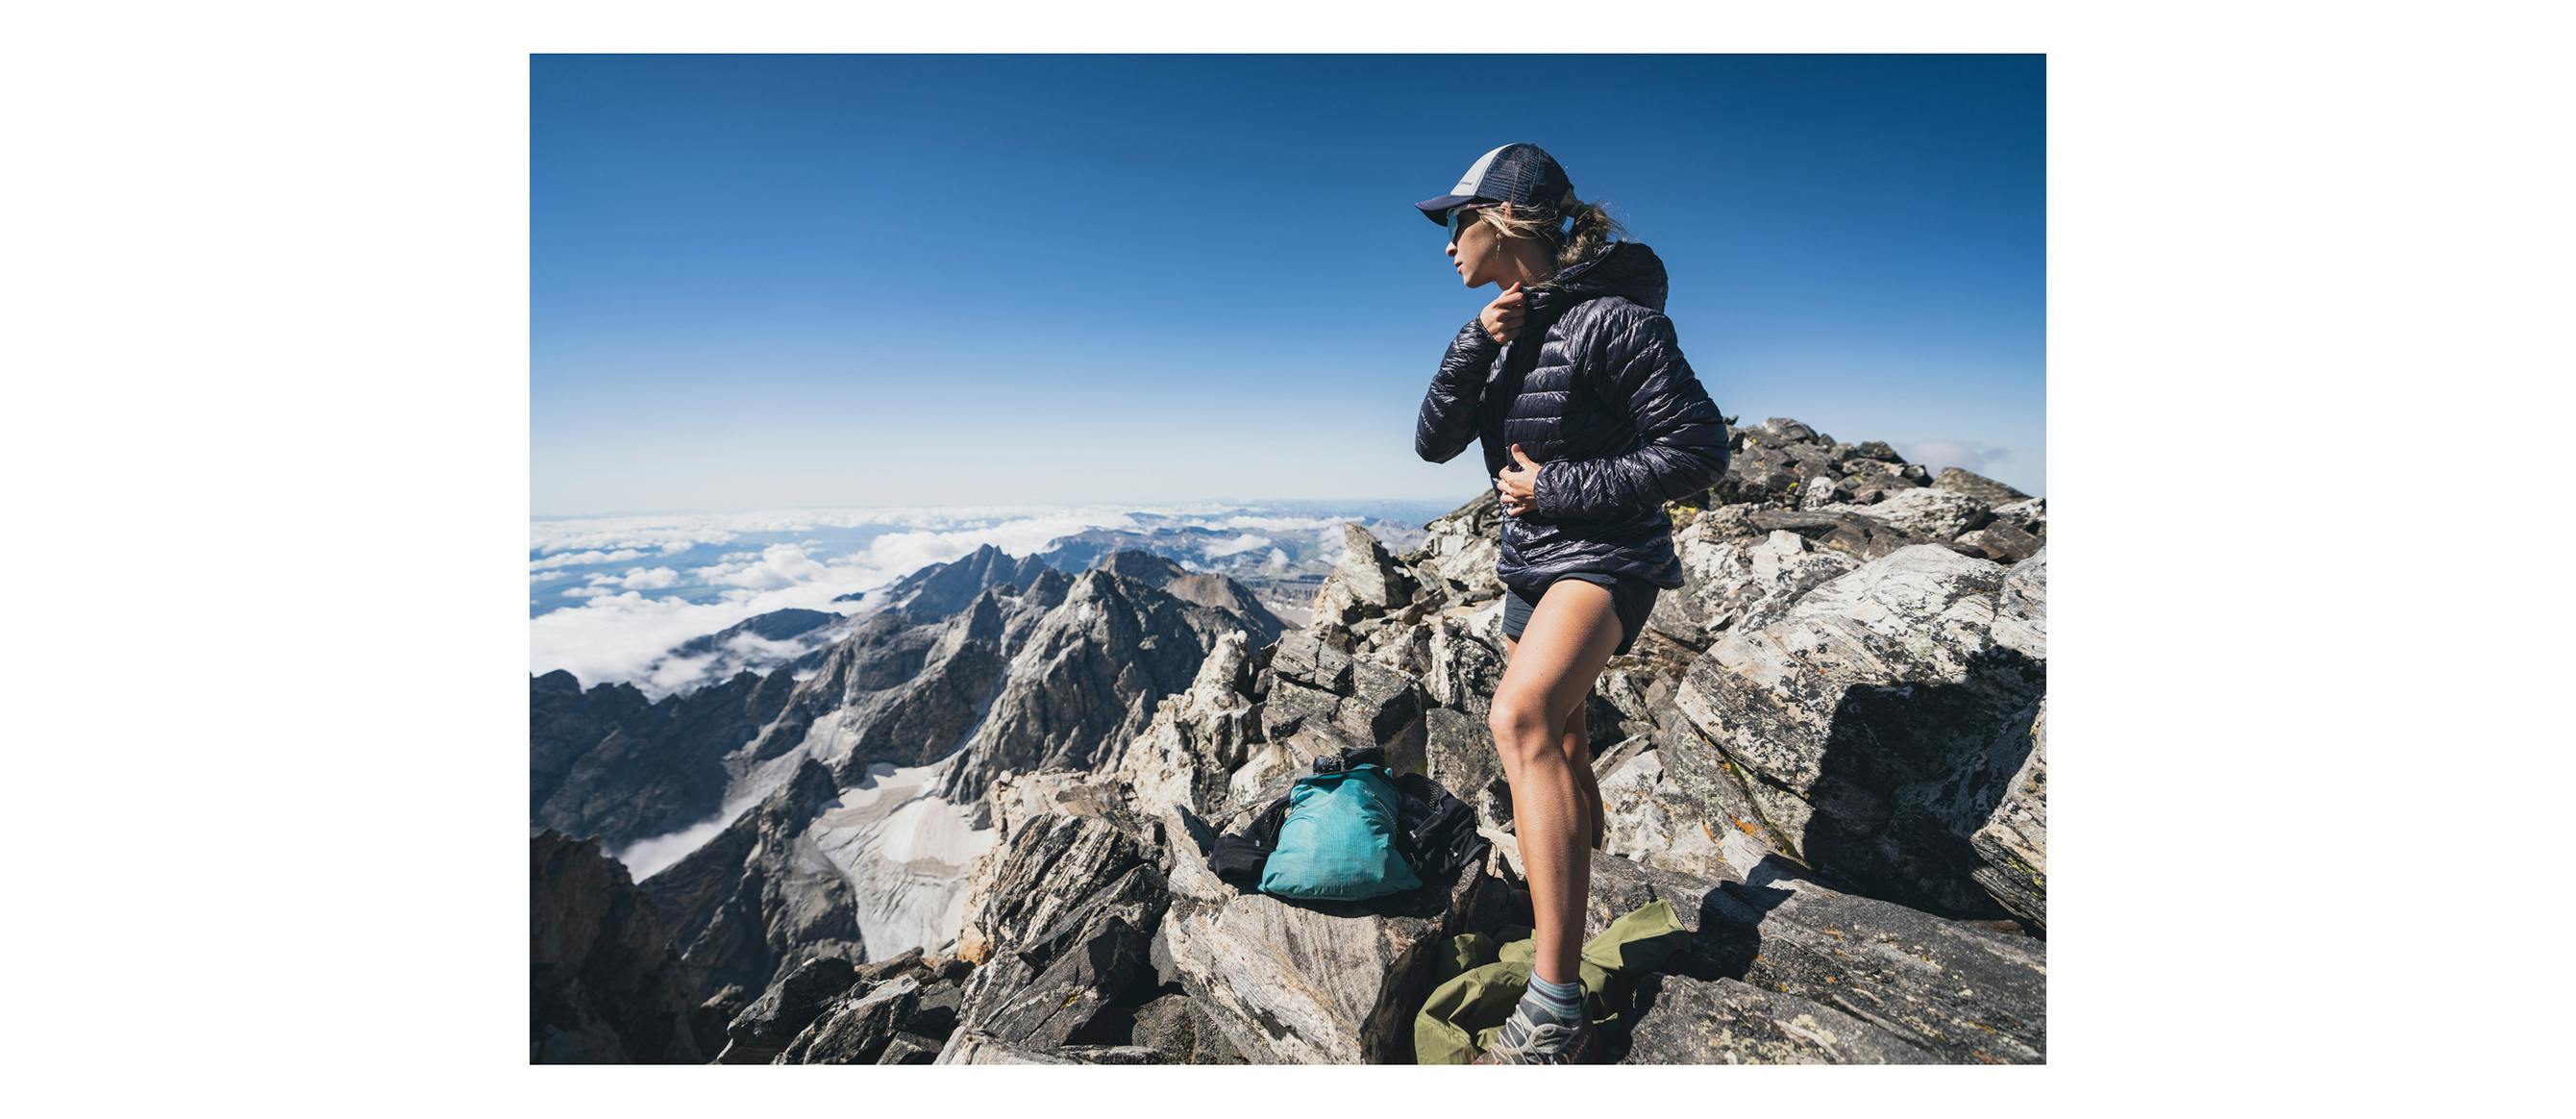 Kelly Halpin, athlète de Black Diamond, enfile le sweat d'approche pour rester au chaud au sommet du Grand Teton. 